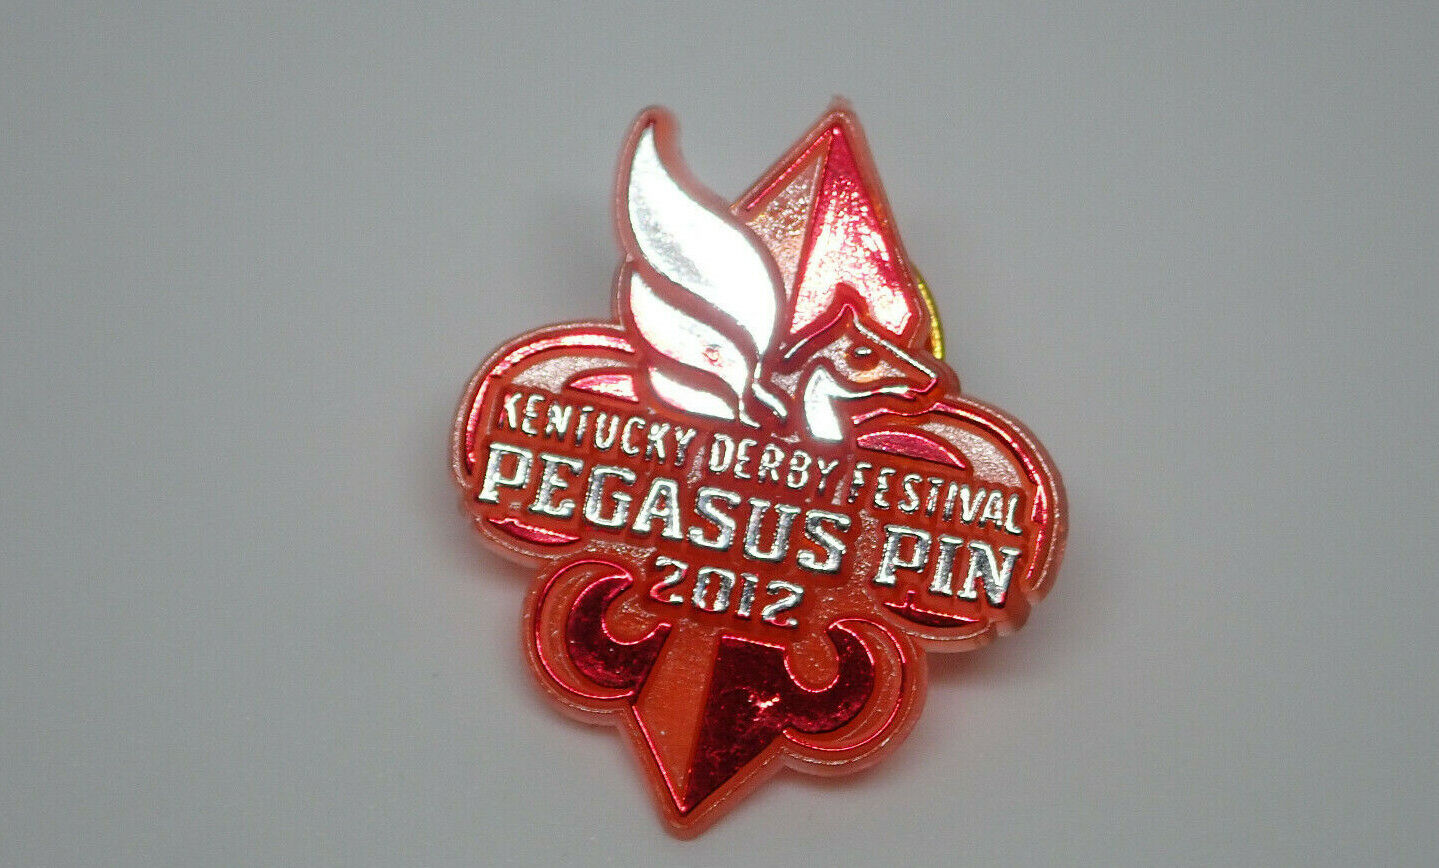 2012  Kentucky Derby Festival Pegasus Pin Vintage Lapel Pin